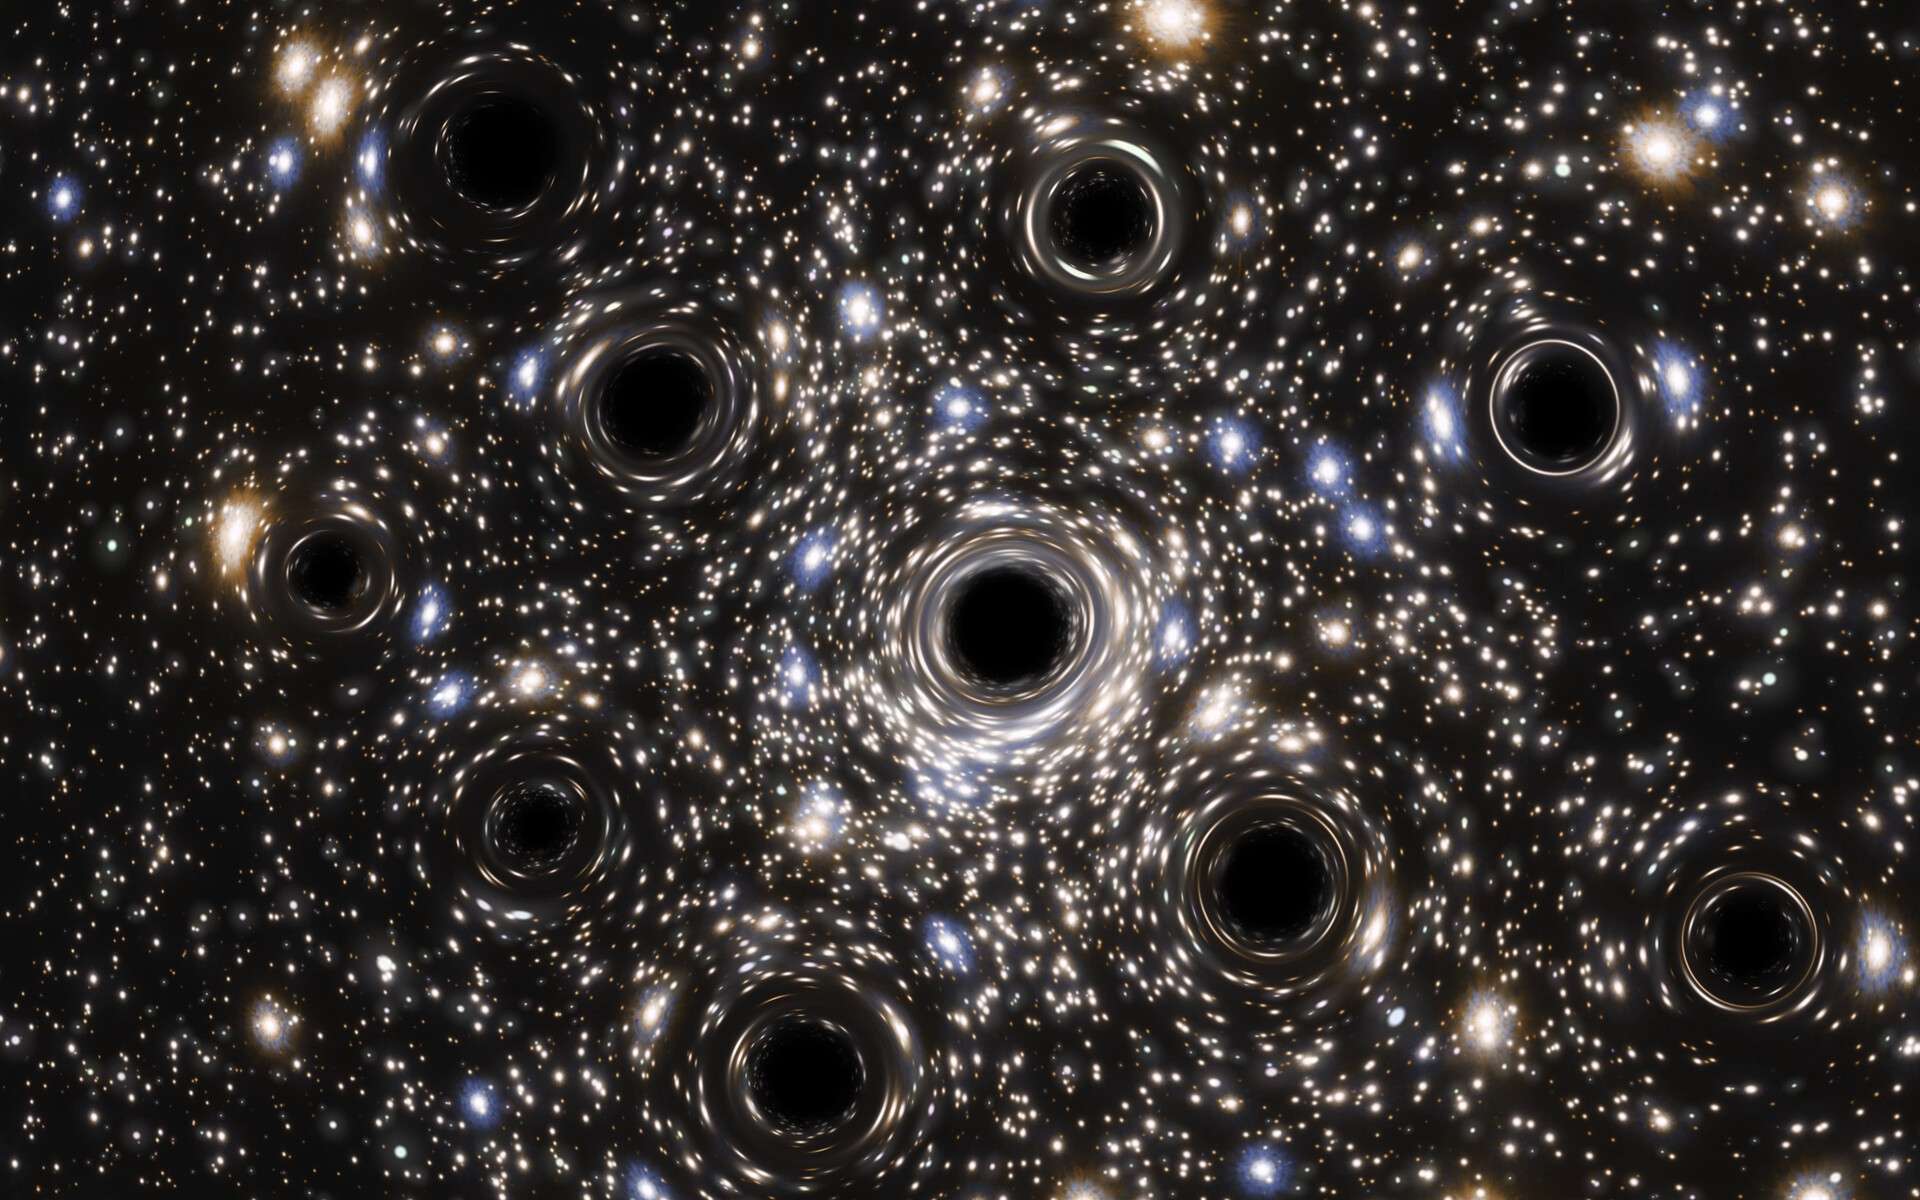 40 milliards de milliards de trous noirs stellaires dans l'Univers observable ! thumbnail